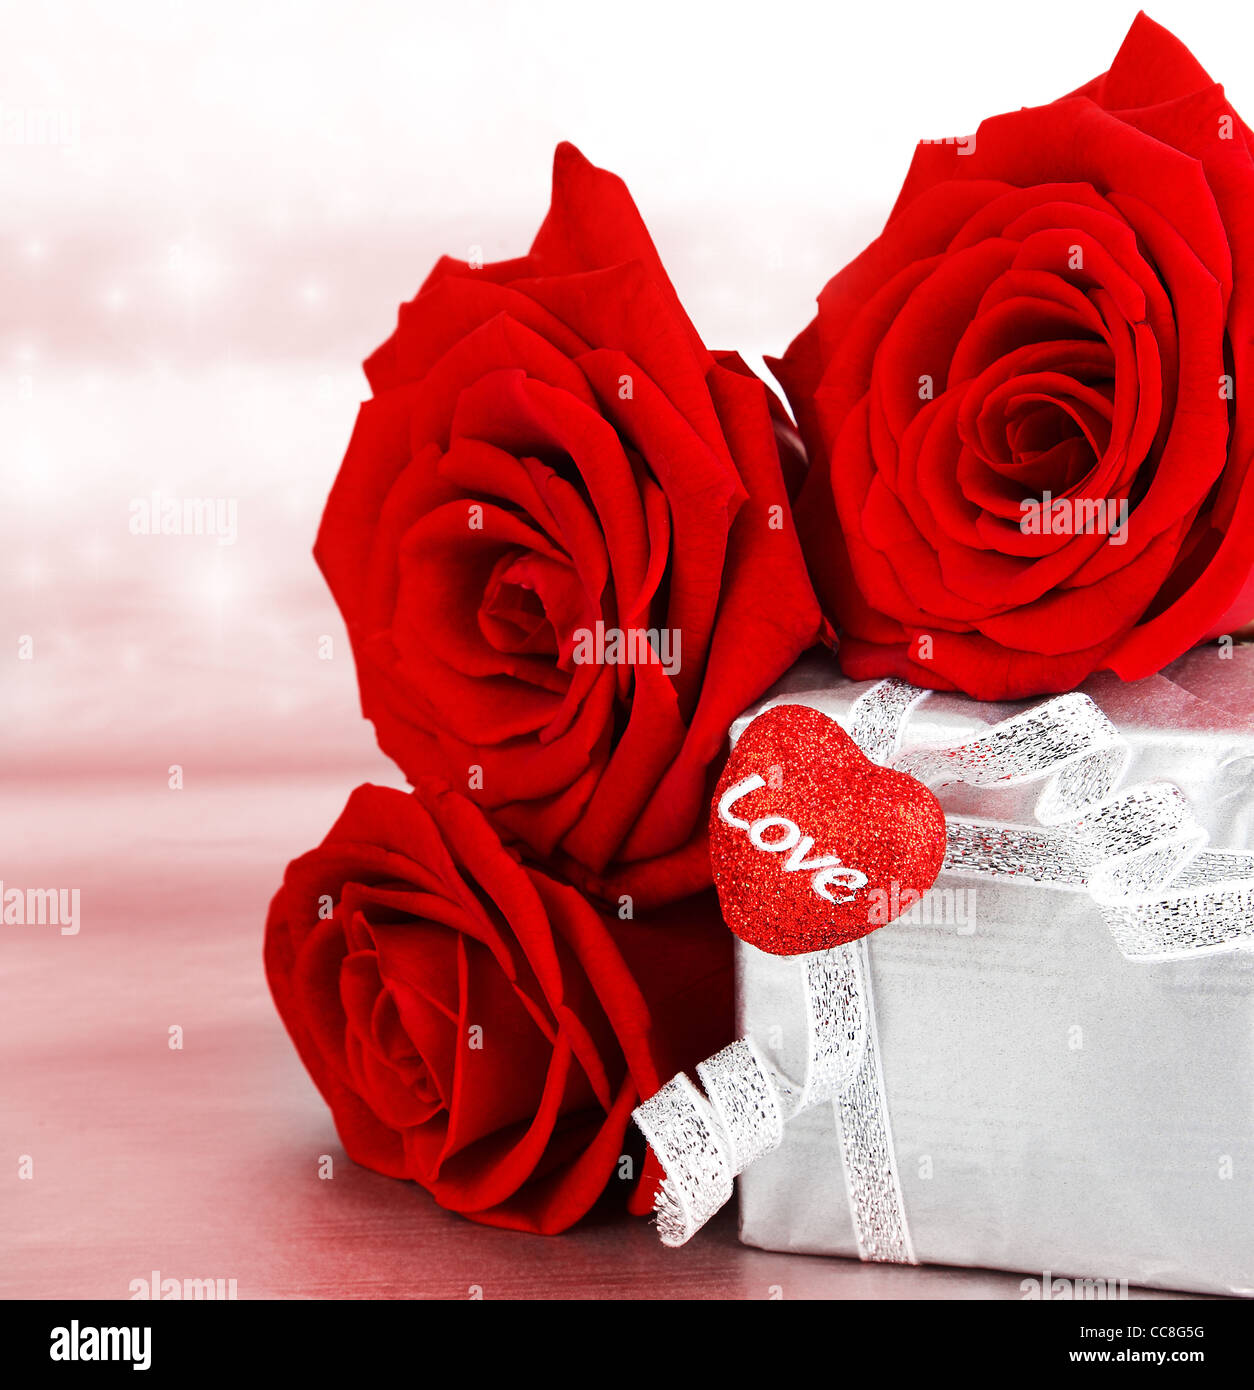 Cadeau romantique & roses rouges, isolé sur fond rose, love concept Photo  Stock - Alamy